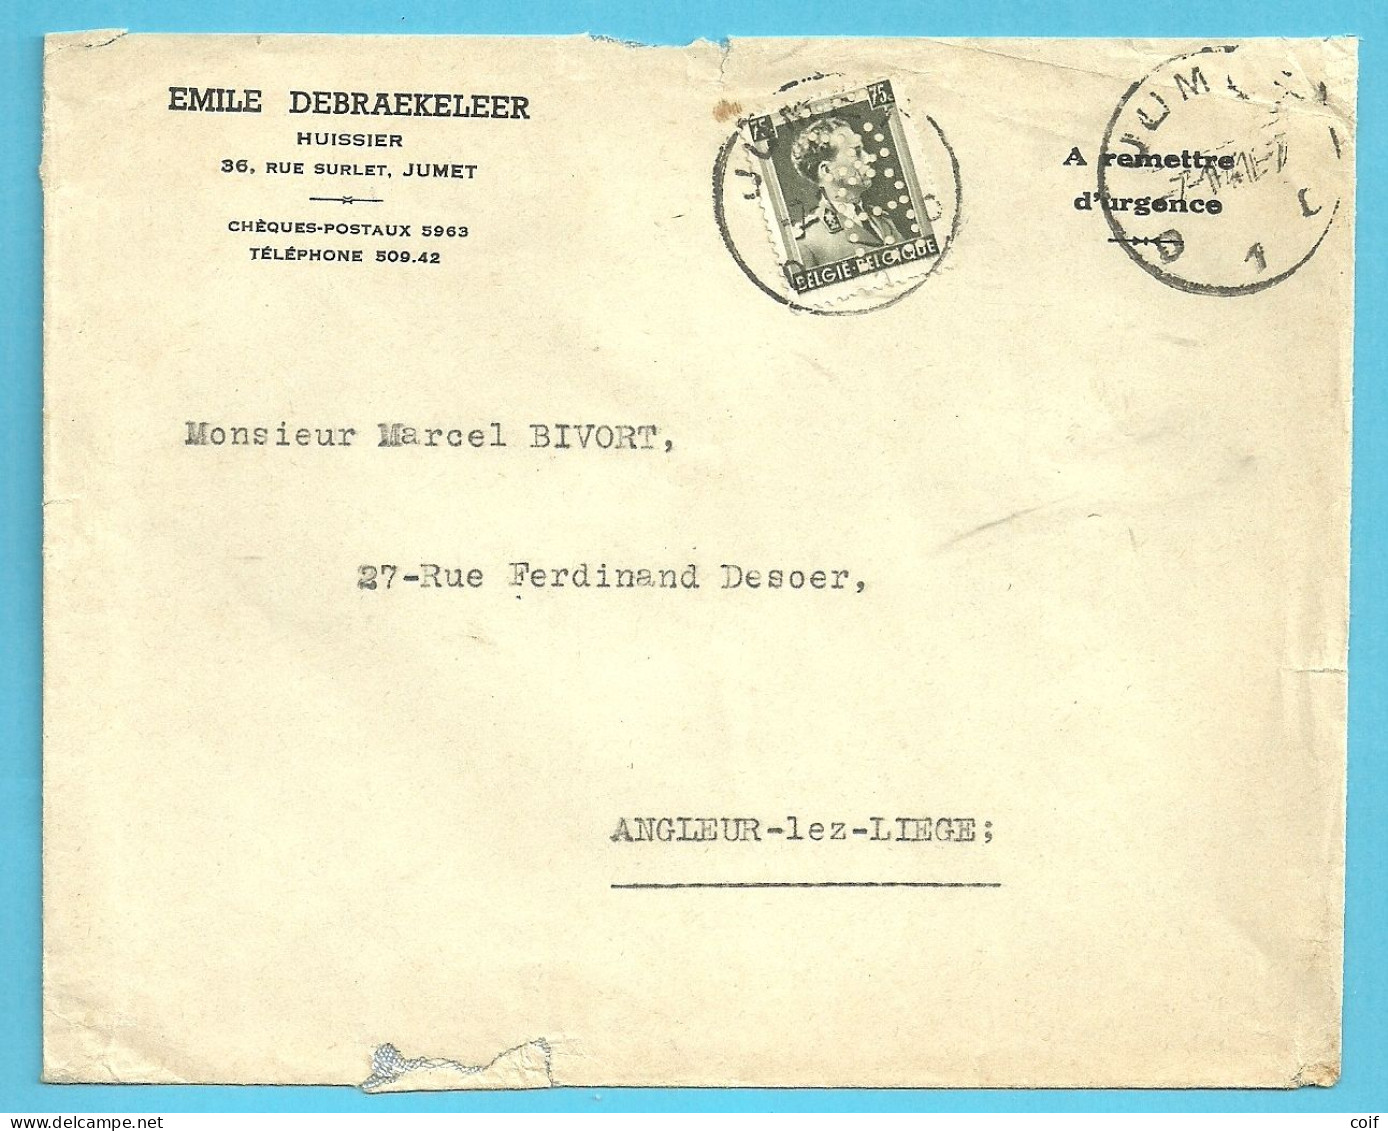 480 Op Brief Stempel JUMET Met Firmaperforatie (perfin) "EDR" Van EMILE DEBRAEKELEER / Huissier Te JUMET - 1934-51